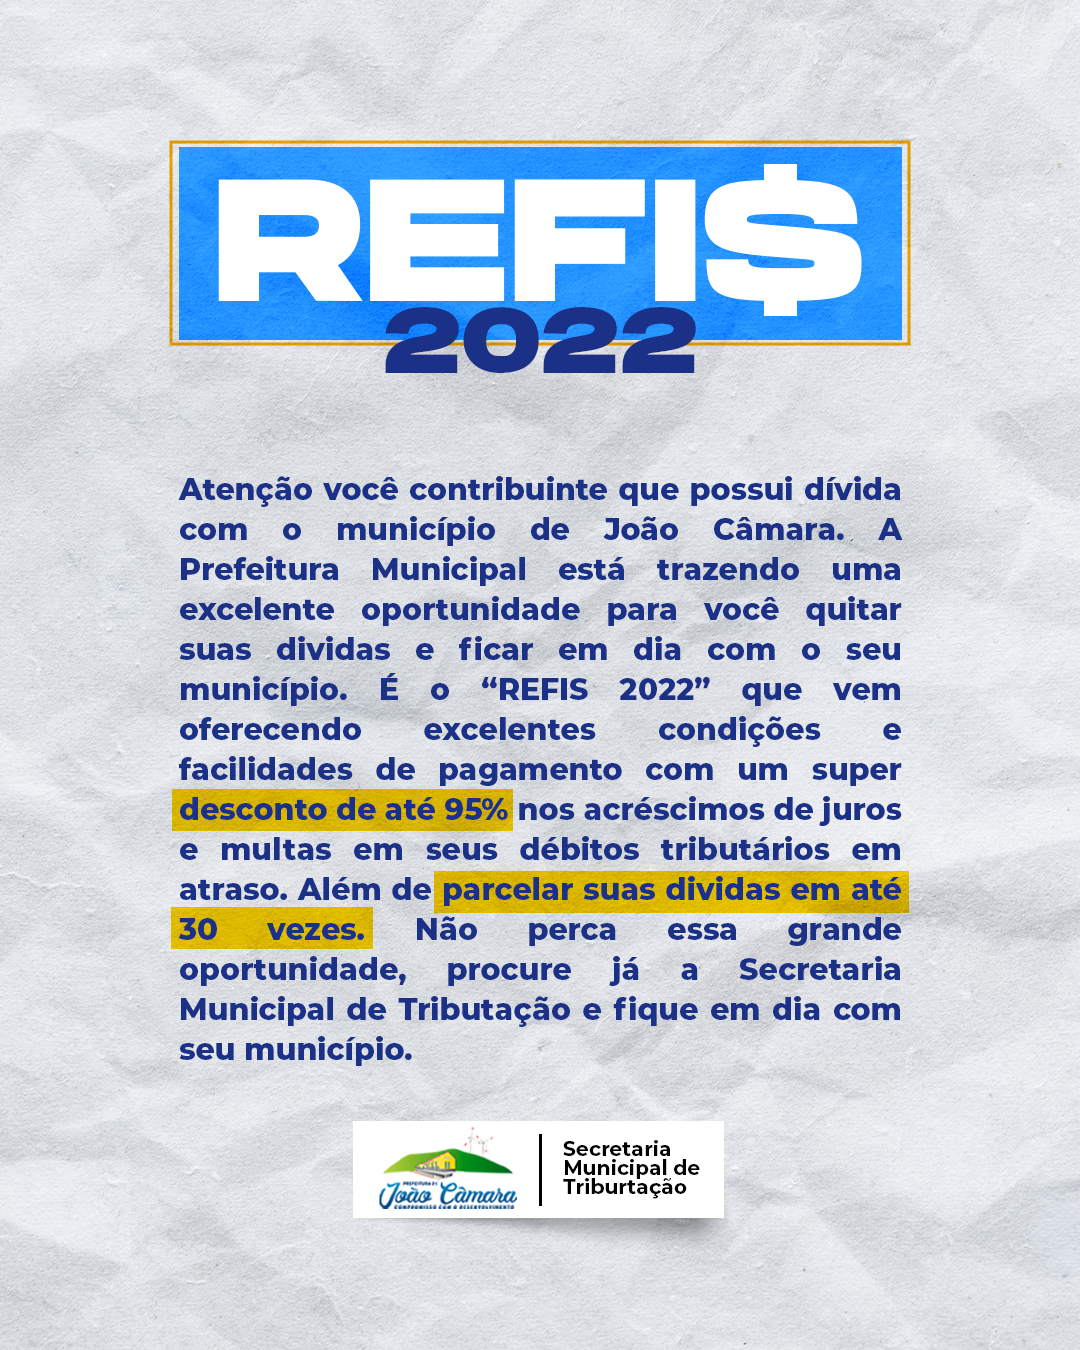 Prefeitura de João Câmara oferece condições especiais para o REFIS 2022